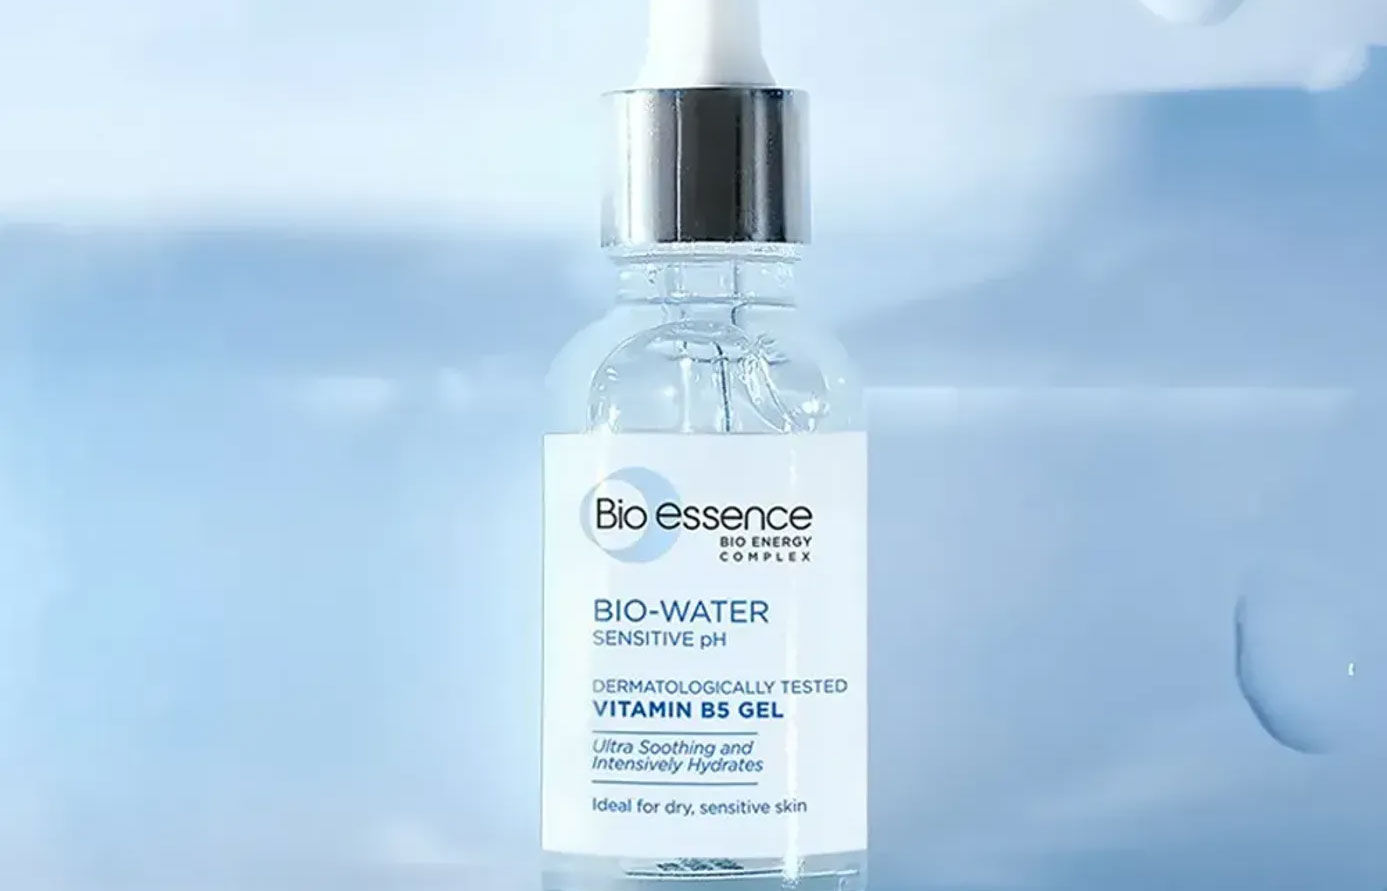 Tinh chất dưỡng ẩm, phục hồi làn da Bio-essence Bio-Water Vitamin B5 Gel